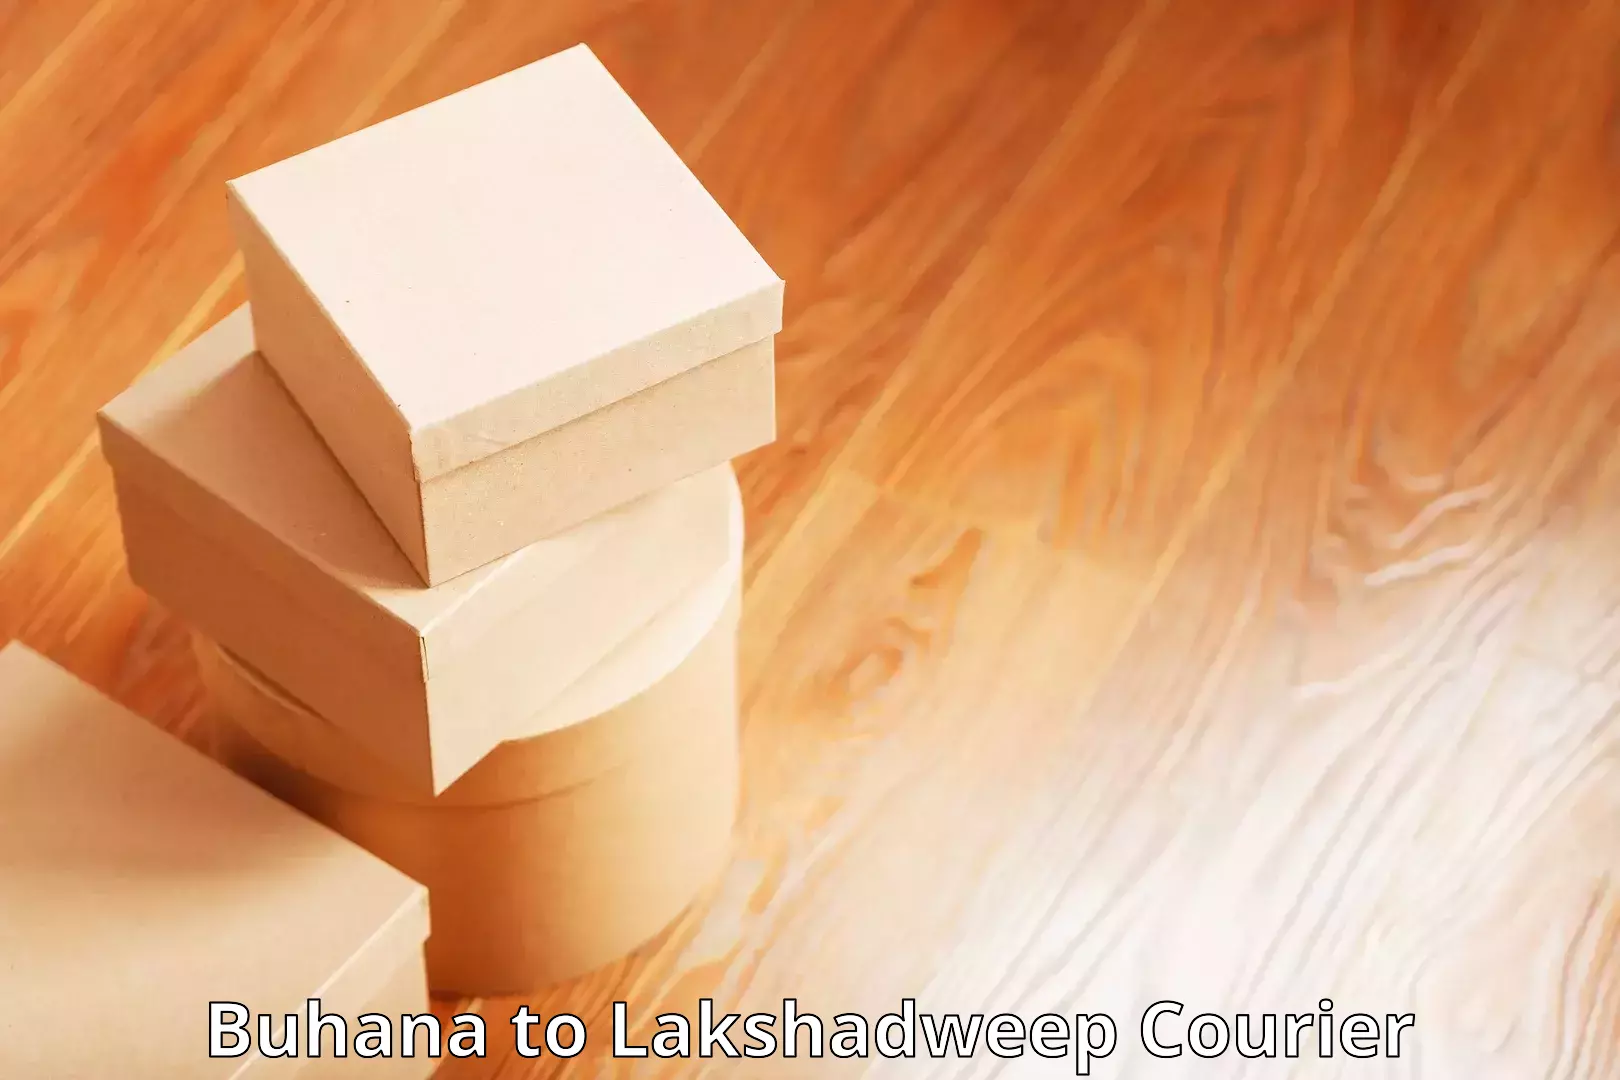 Express postal services Buhana to Lakshadweep